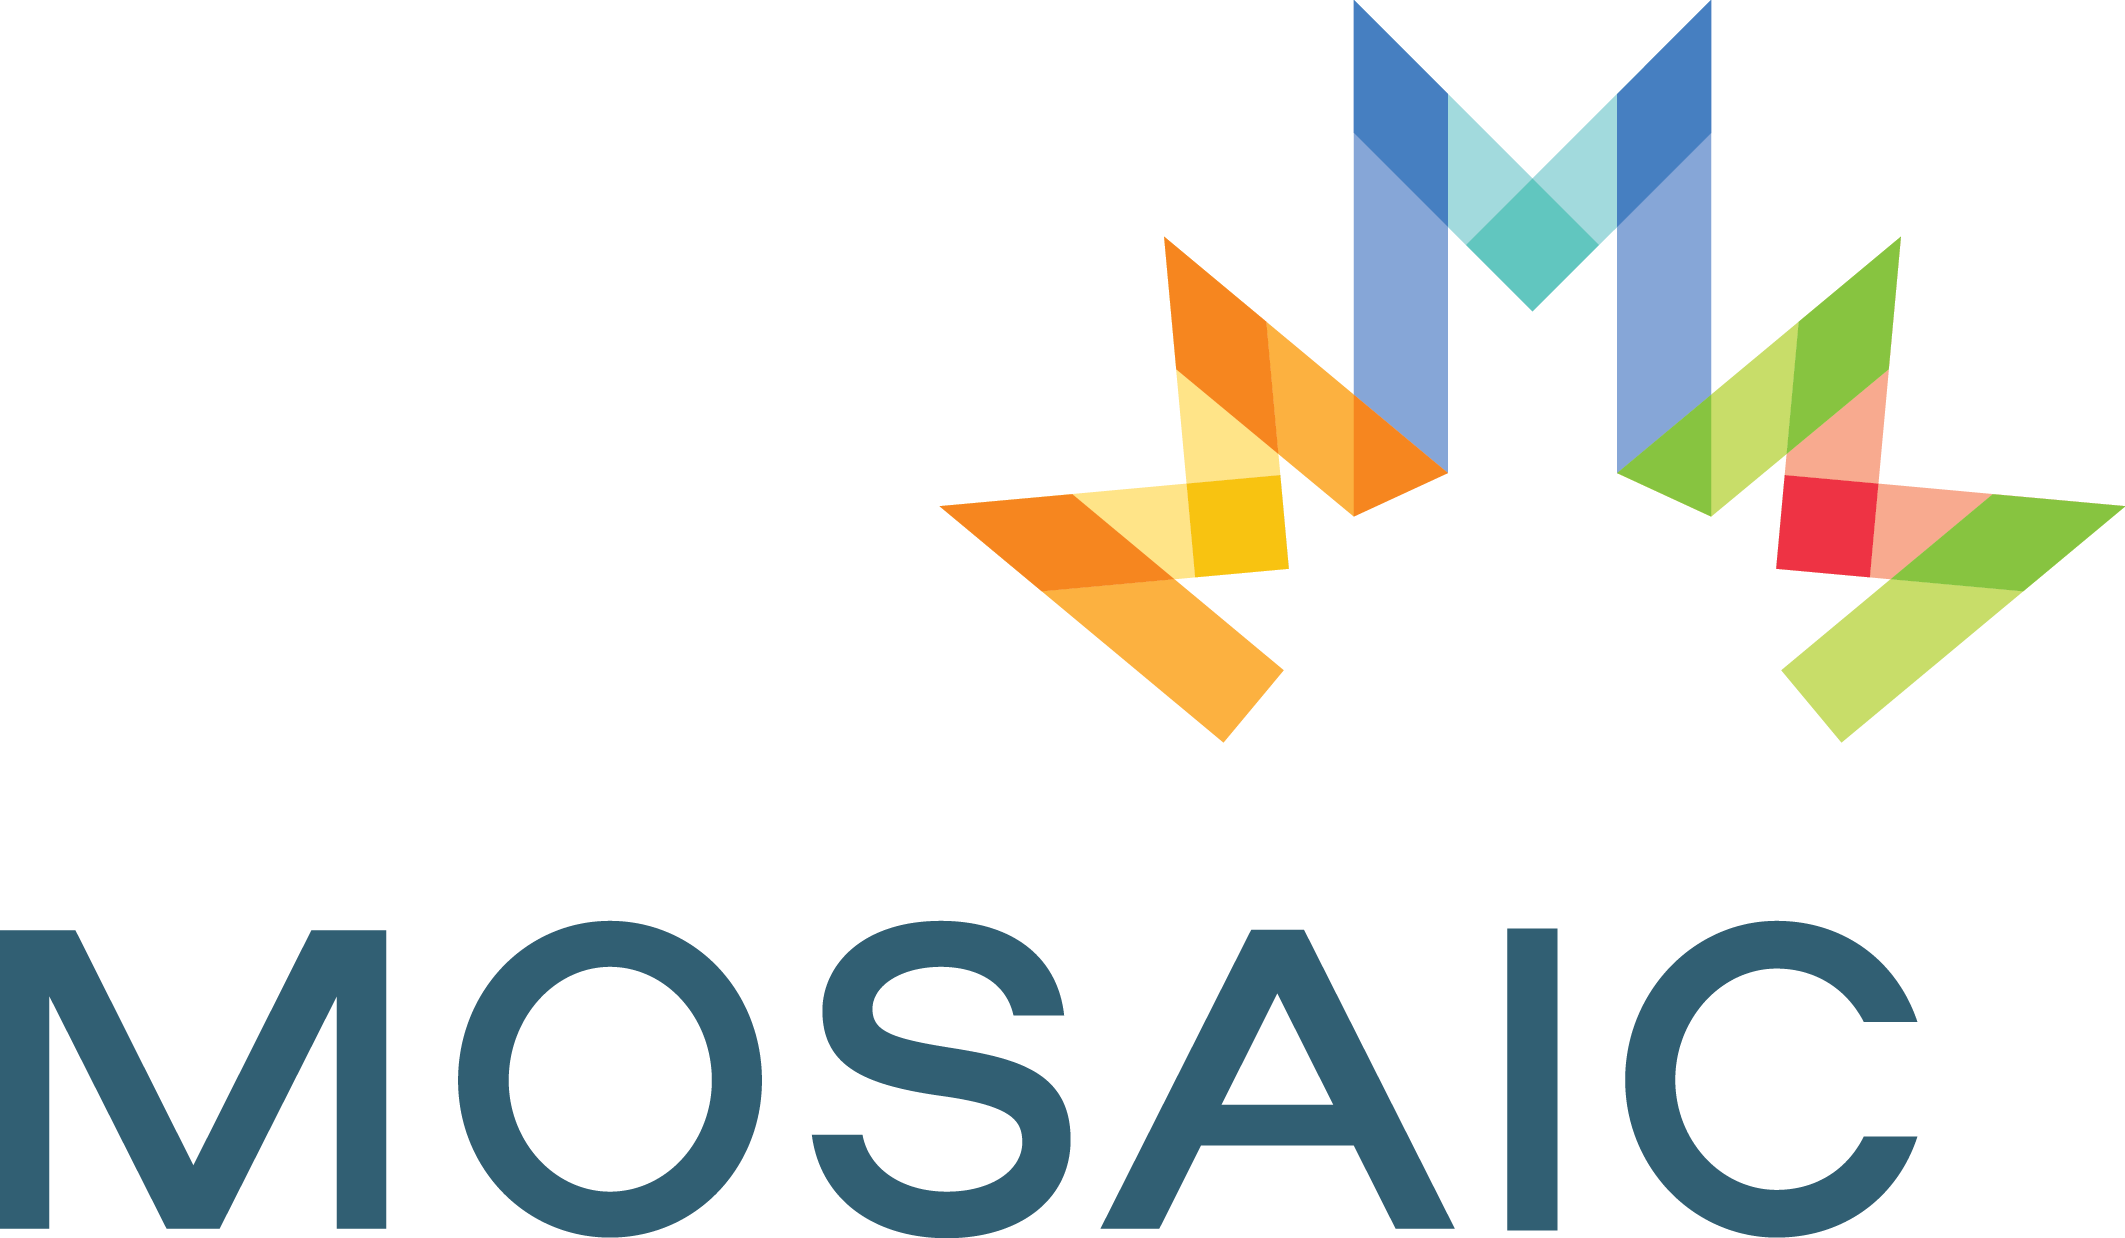 MOSAIC est une agence multilingue sans but lucratif dont la mission est d’aider l’installation et l’intégration des immigrants et des réfugiés.